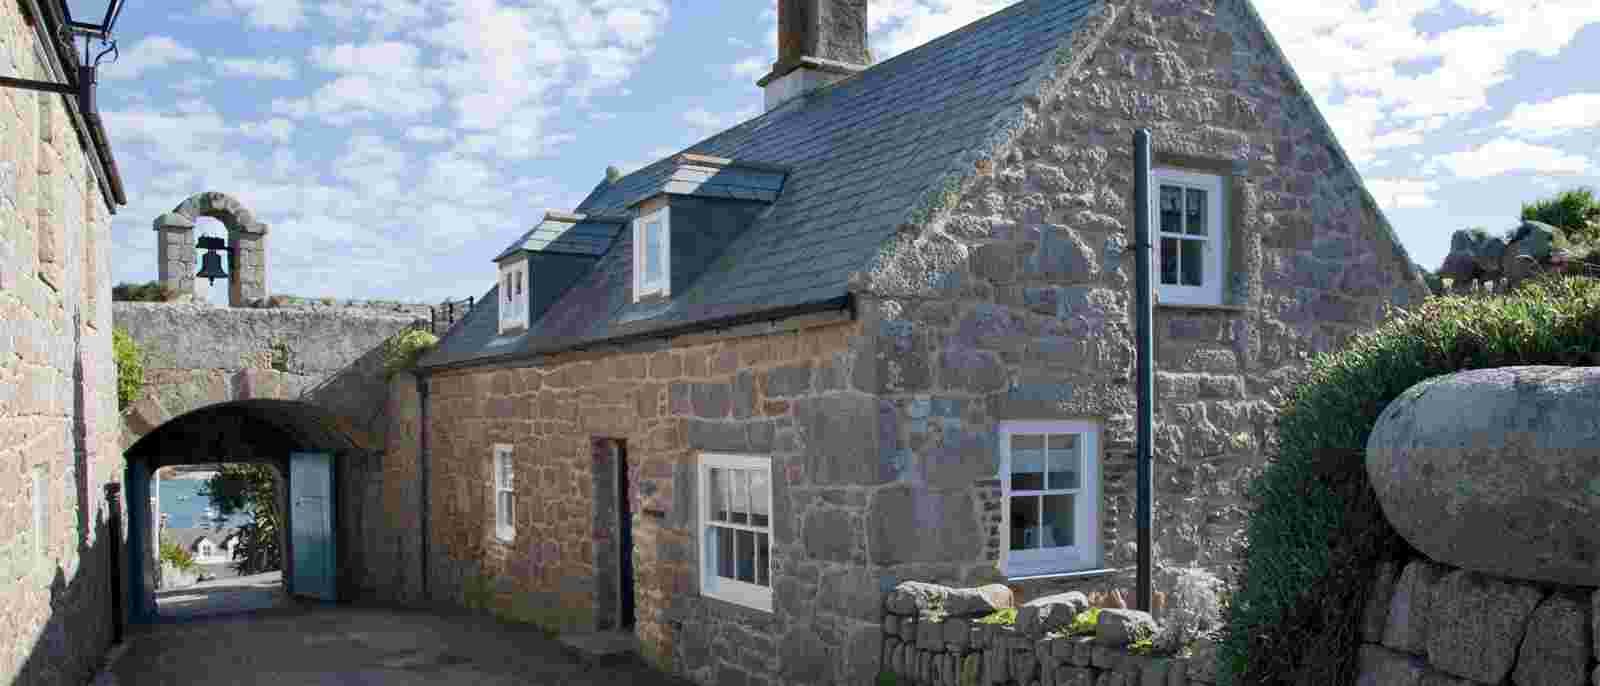 Gatehouse Cottage